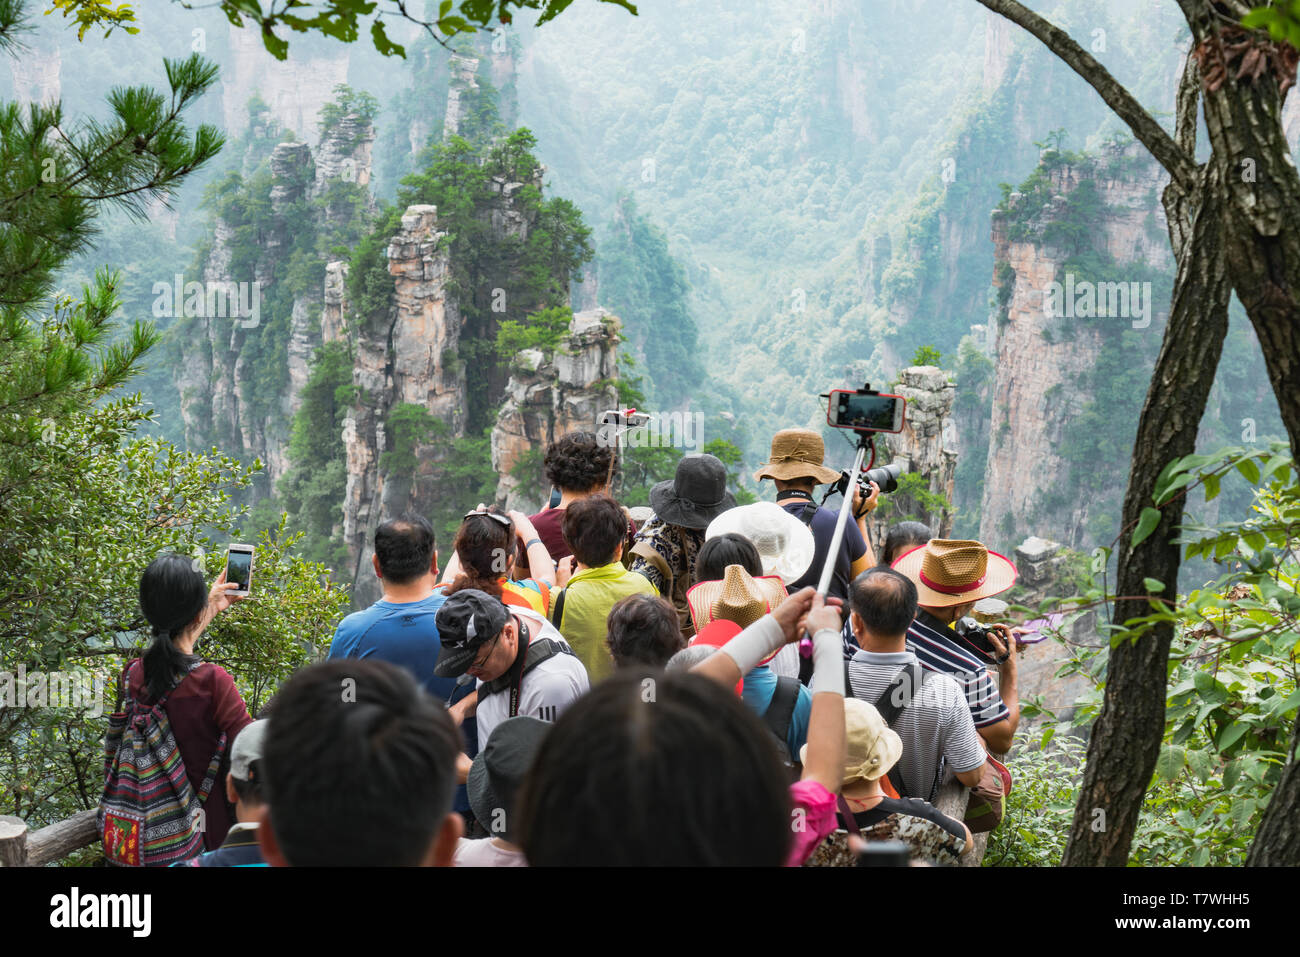 Zhangjiajie, China - 13/09/2017: Los turistas apiñados en un lugar escénico para tomar fotografías en el Parque Forestal Nacional Zhangjiajie Foto de stock